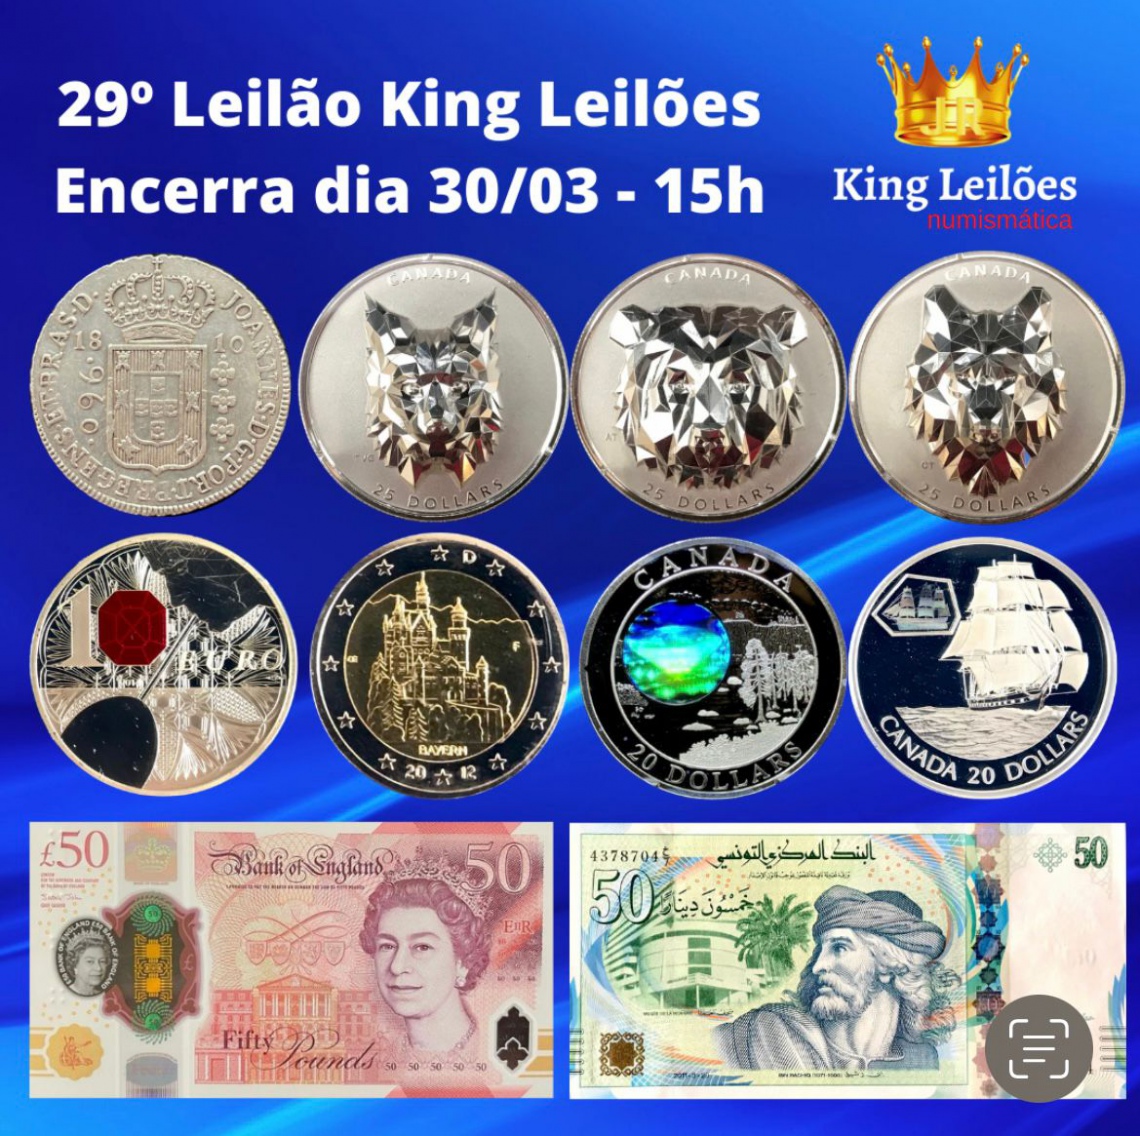 29º LEILÃO KING LEILÕES DE NUMISMÁTICA, MULTICOLECIONISMO E ANTIGUIDADES